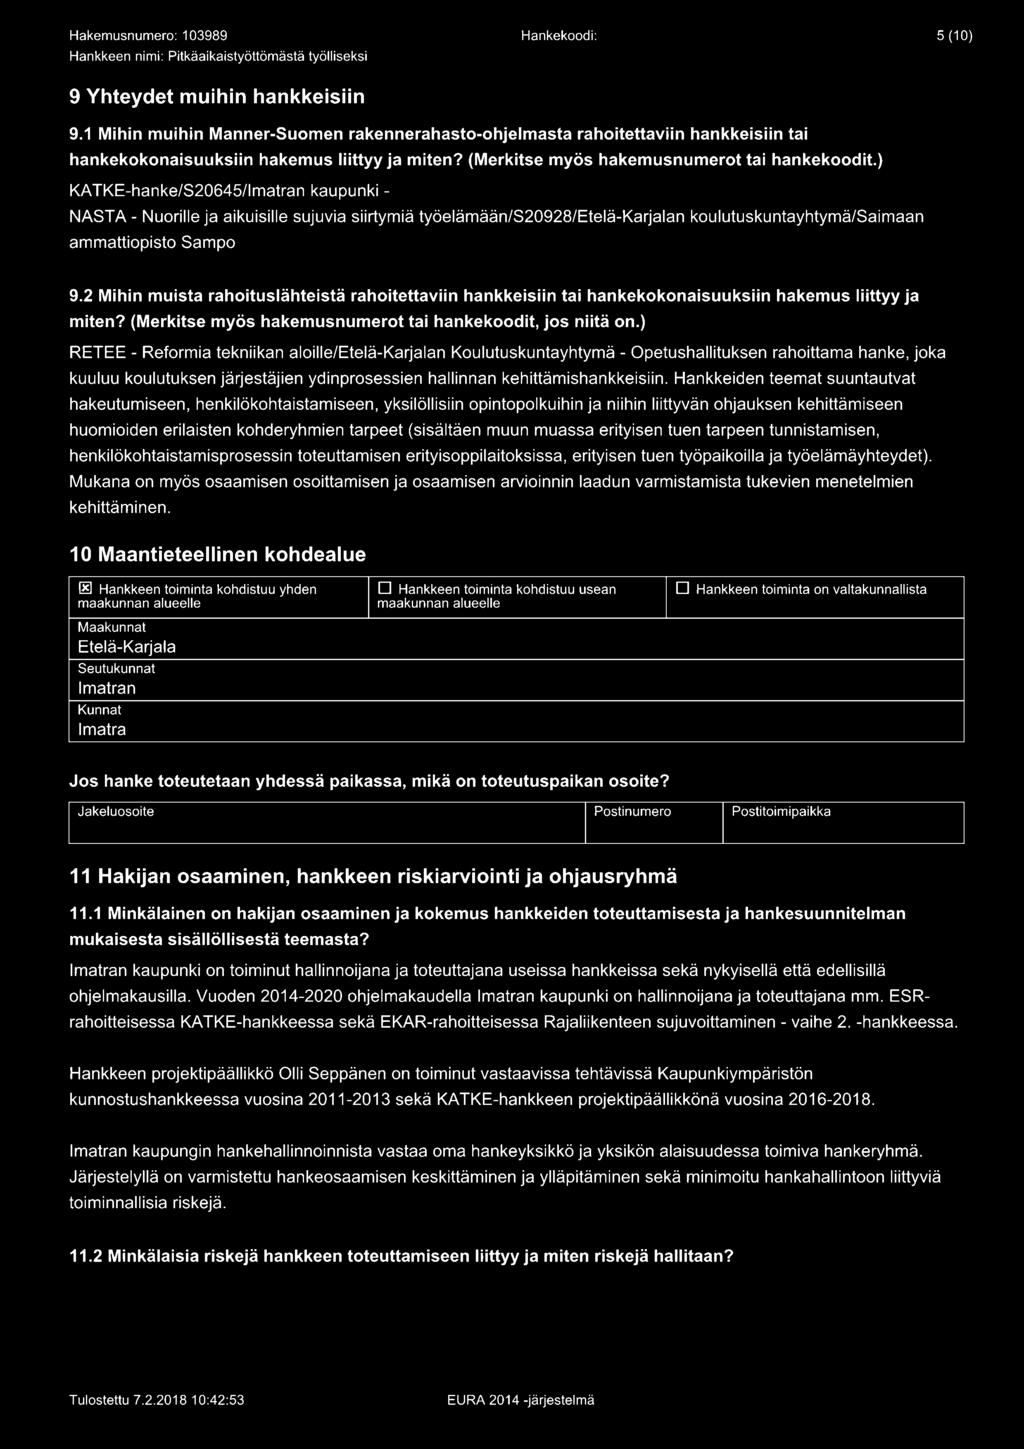 ) KATKE-hanke/S20645/lmatran kaupunki - NASTA - Nuorille ja aikuisille sujuvia siirtymiä työelämään/s20928/etelä-karjalan koulutuskuntayhtymä/saimaan ammattiopisto Sampo 9.